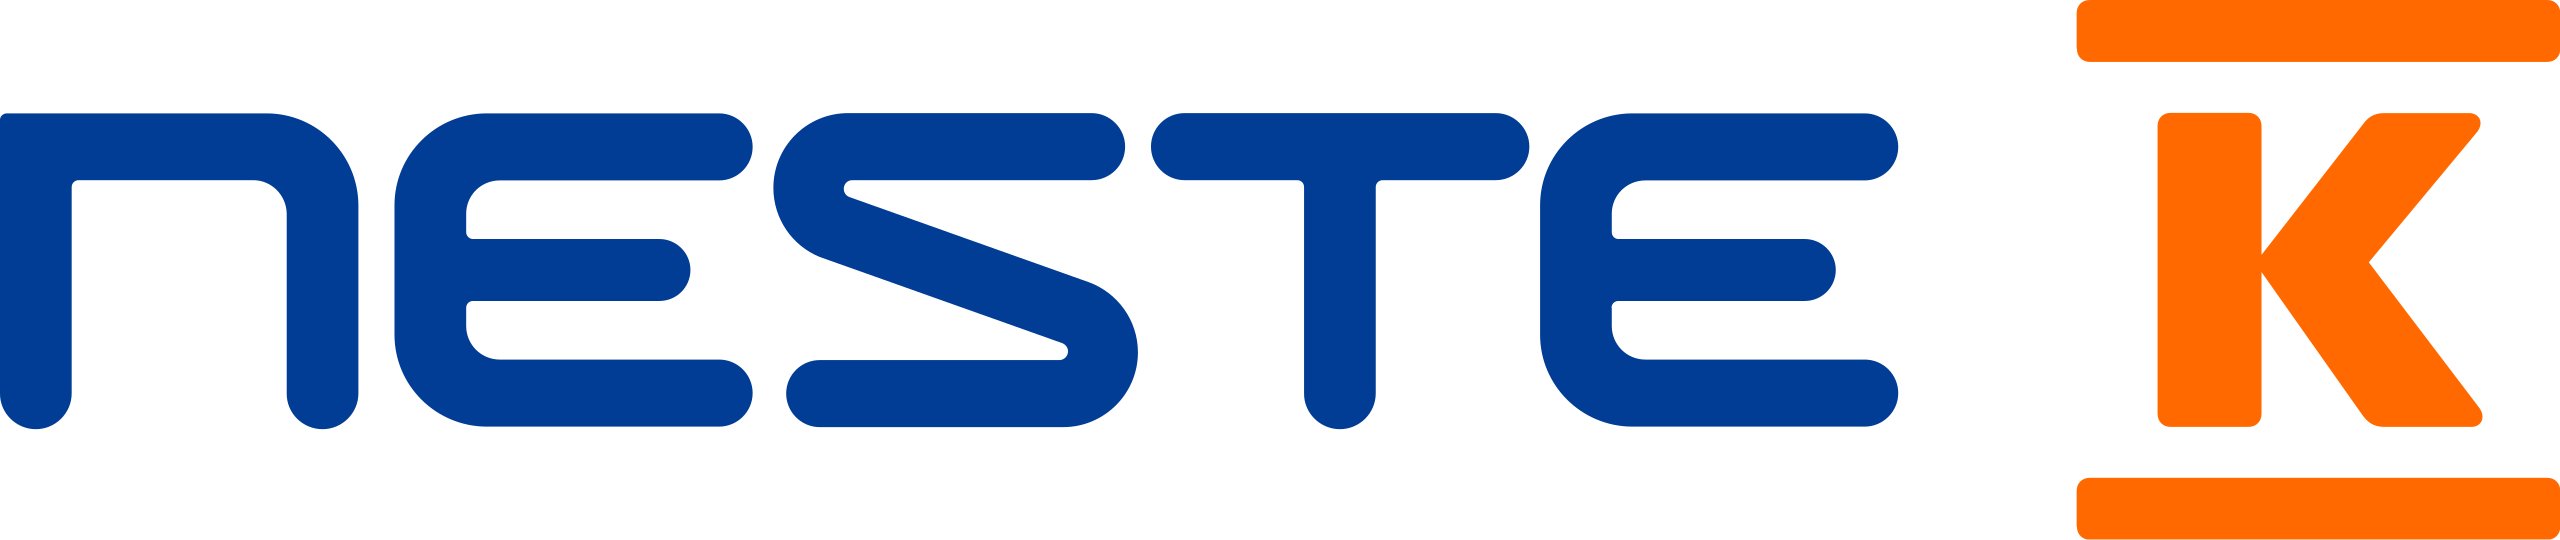 2560px-Neste_K_logo.svg